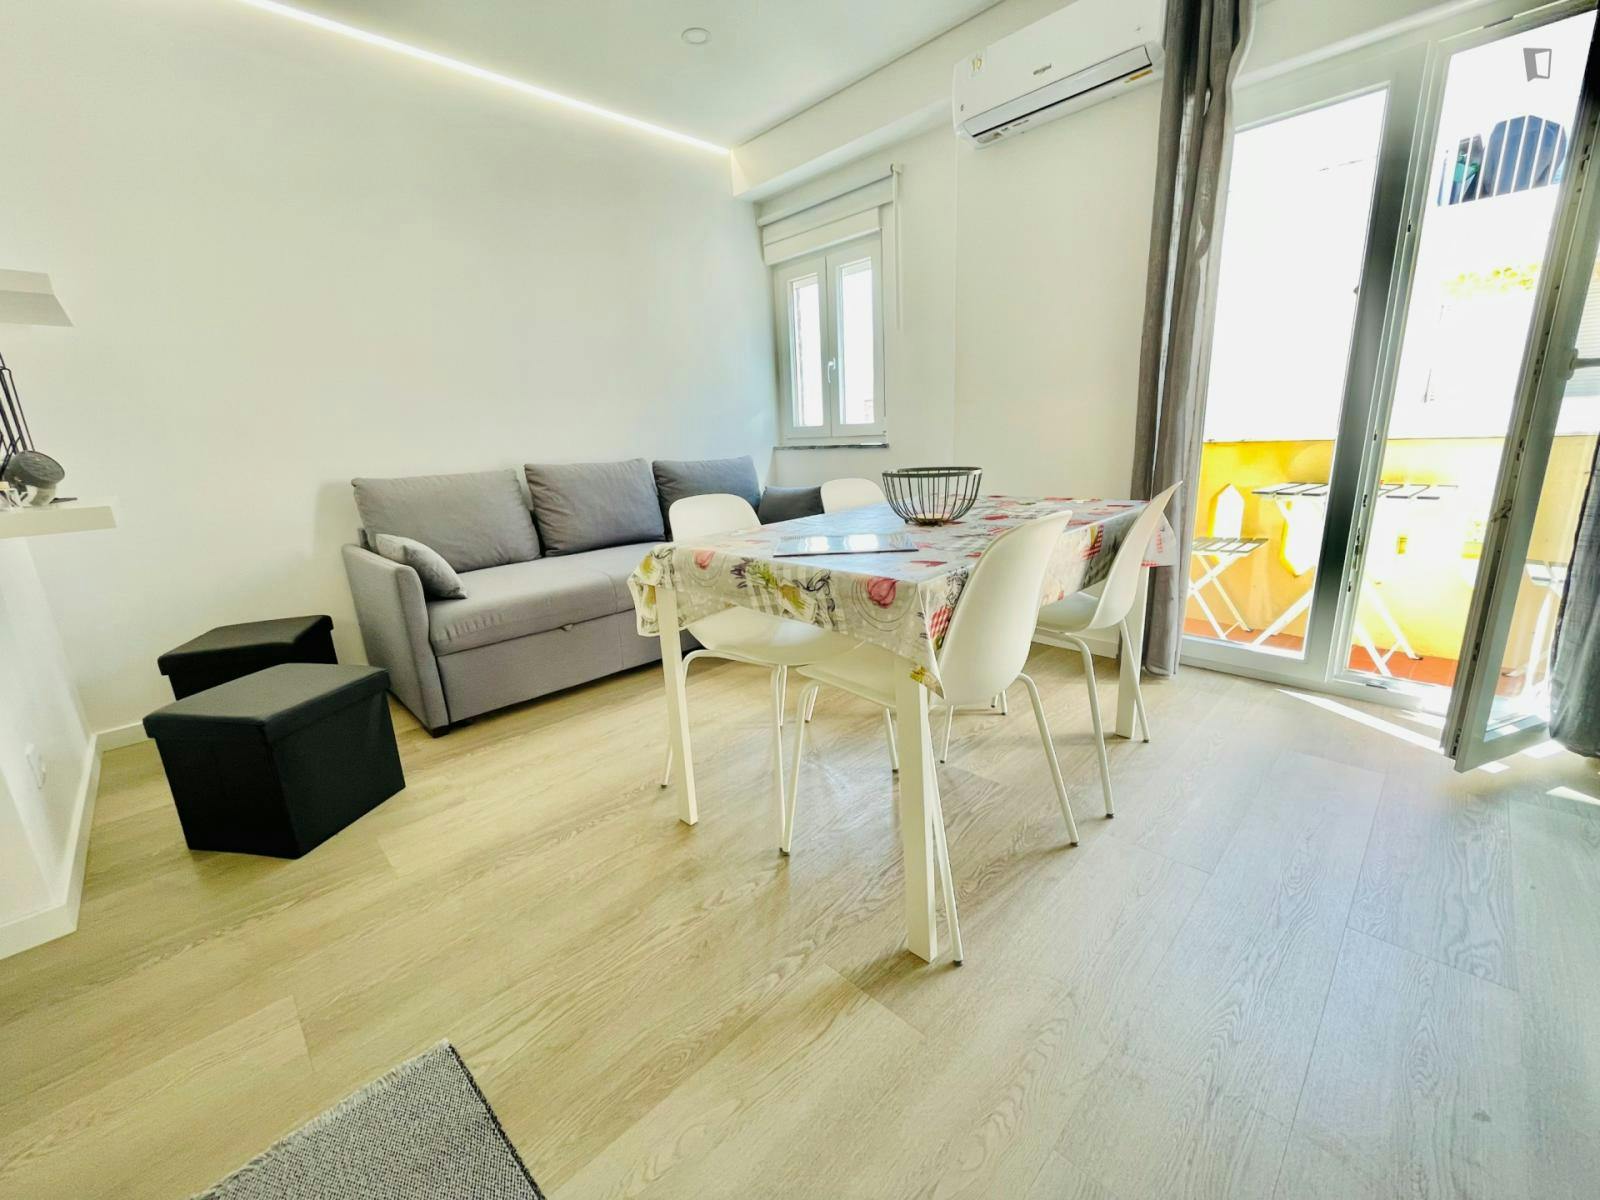 Appealing 1-bedroom apartment in Armação de Pêra